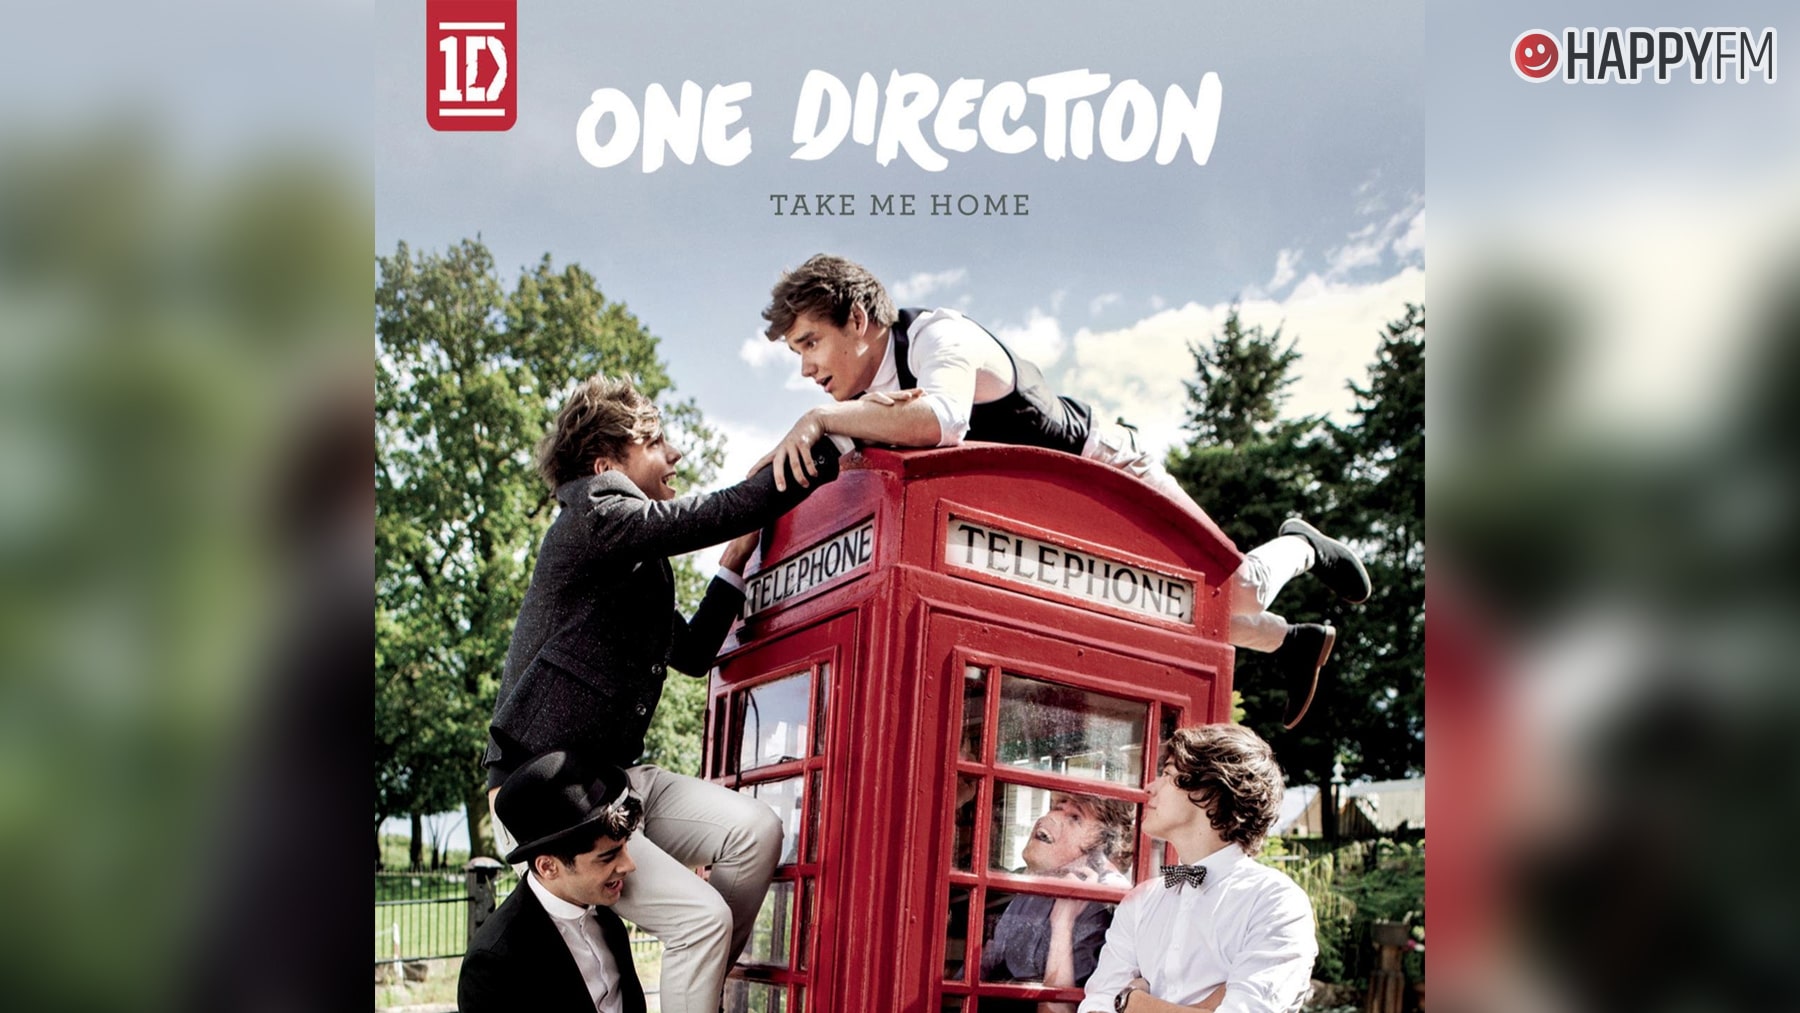 One Direction: Canciones del álbum ‘Take Me Home’ que no olvidaremos